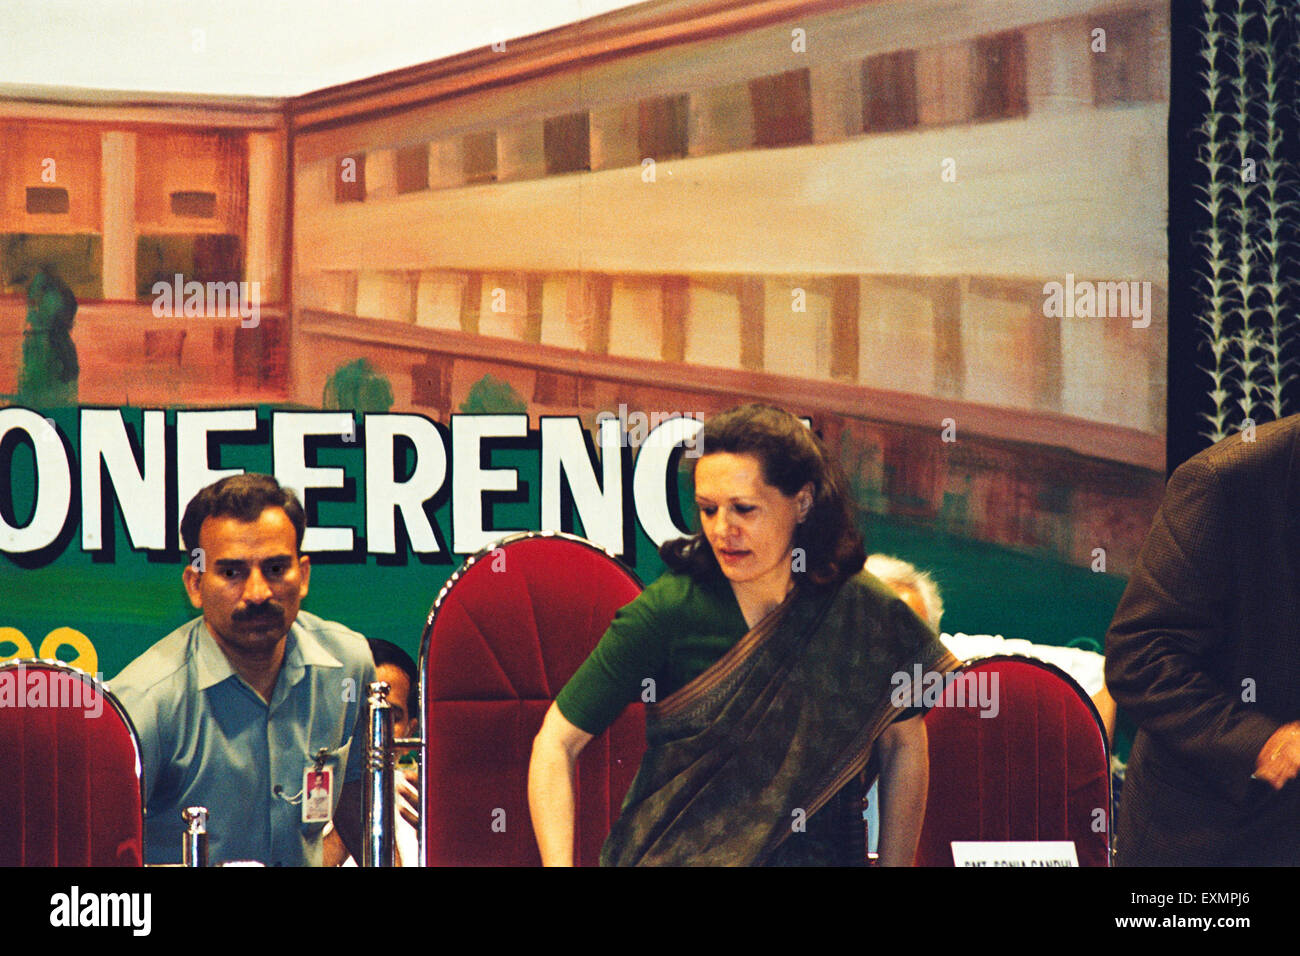 Sonia Gandhi, Parti du Congrès national indien, conférence de presse, Bombay, Mumbai, Maharashtra, Inde, Asie Banque D'Images